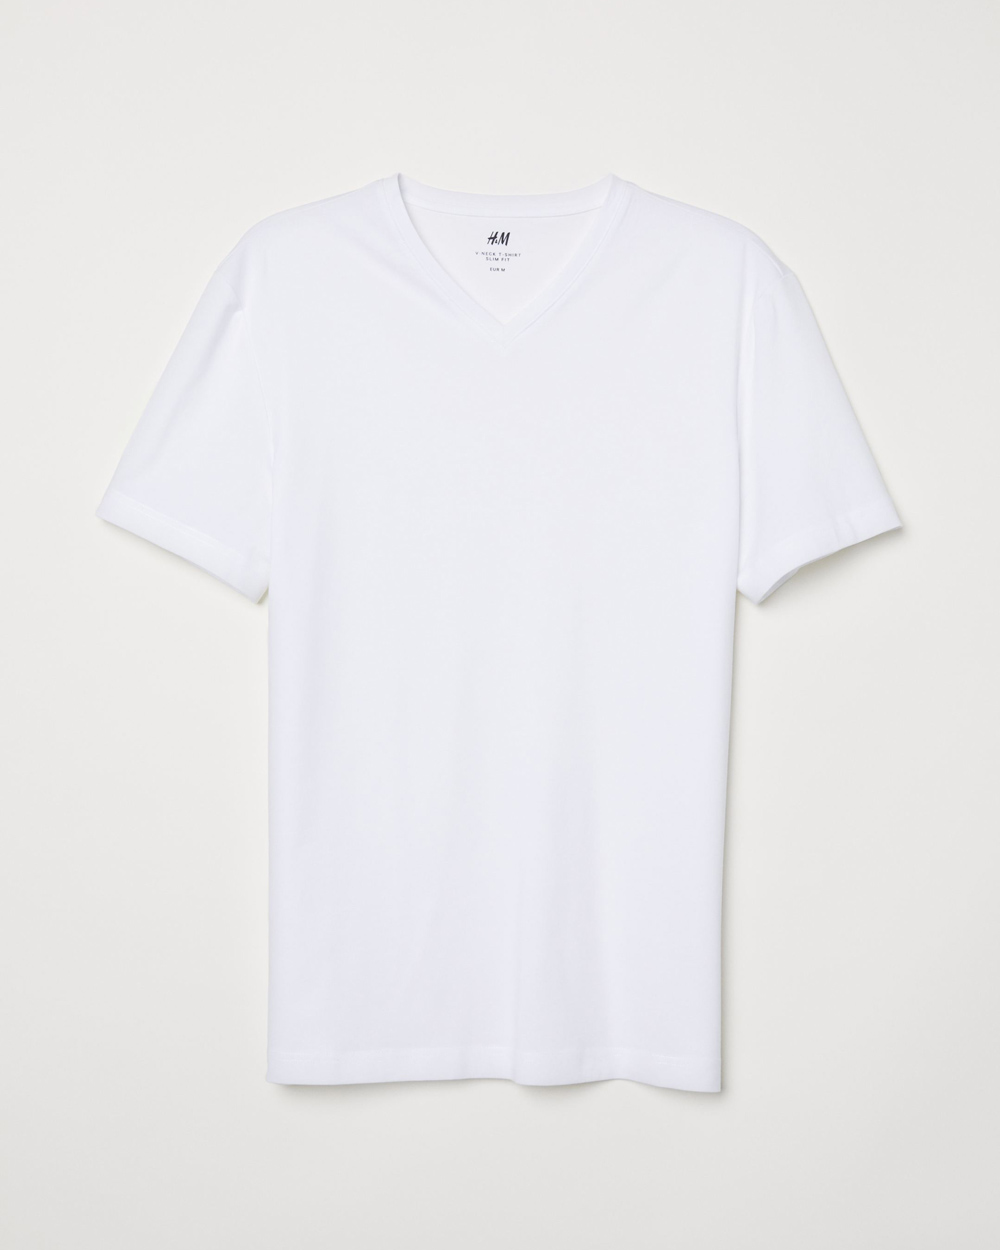 H&M muška bijela majica proljeće 2020 2